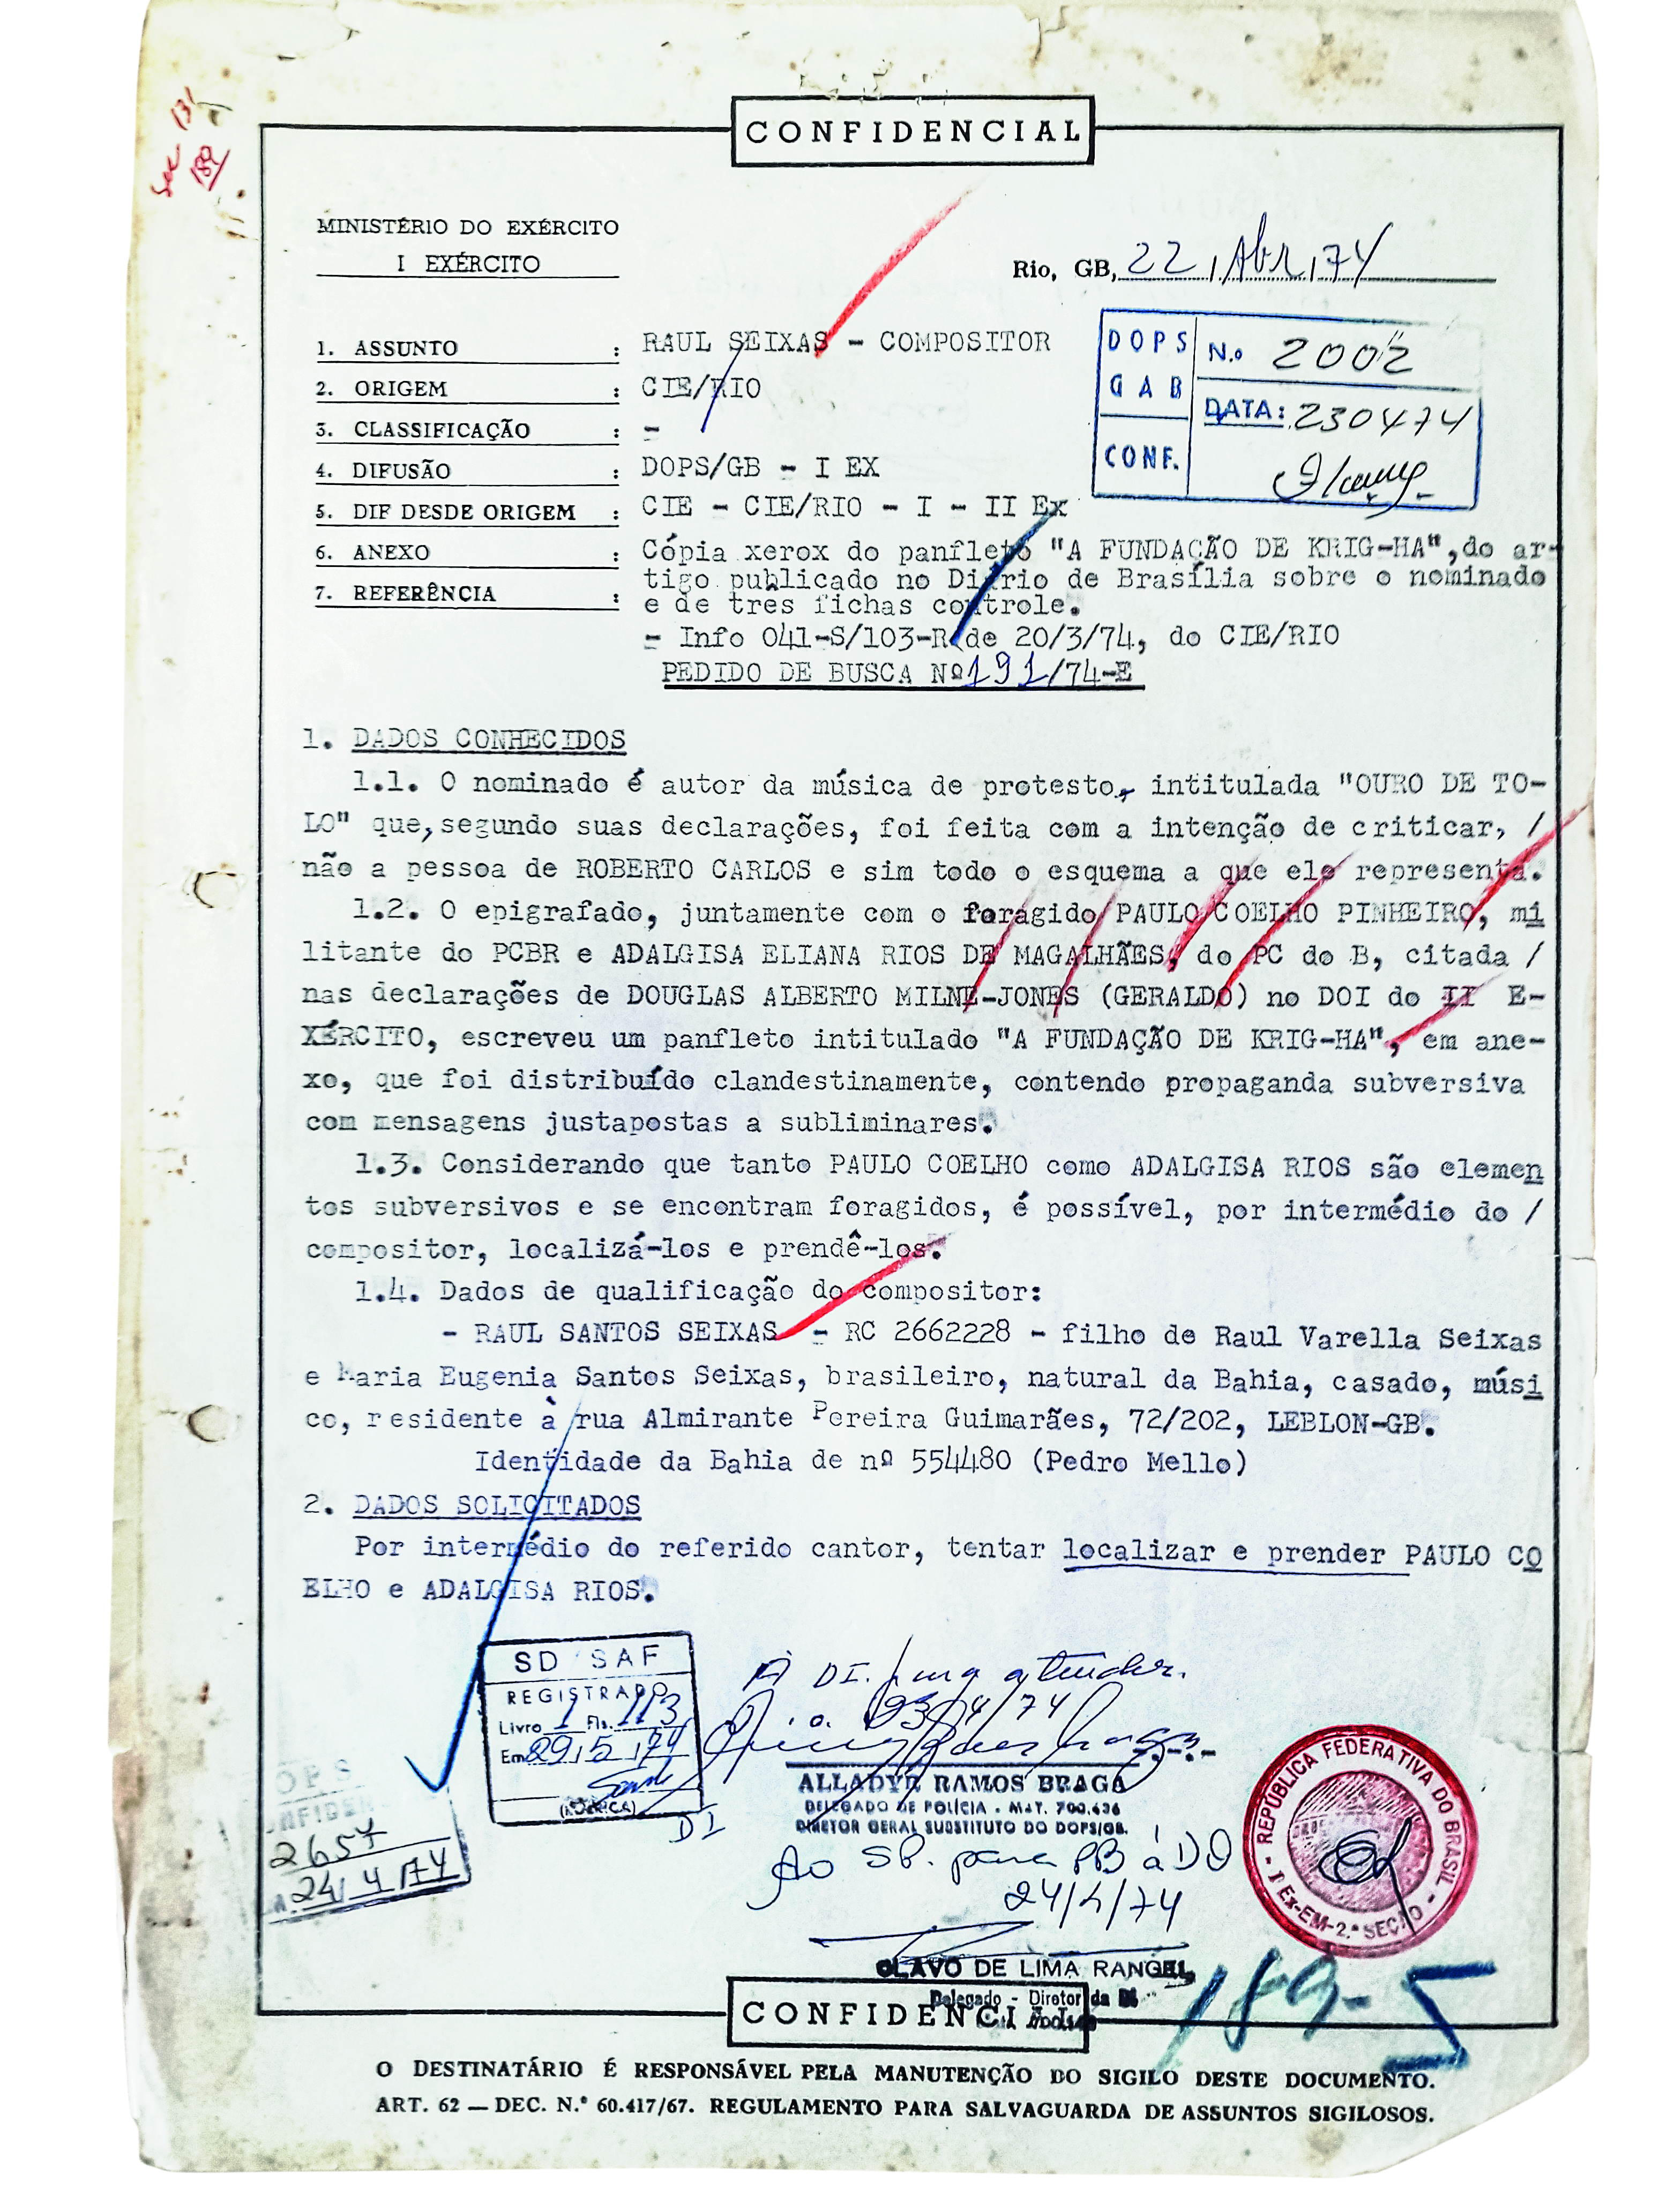 O documento de 22 de abril de 1974 que levanta suspeitas sobre Raul Seixas